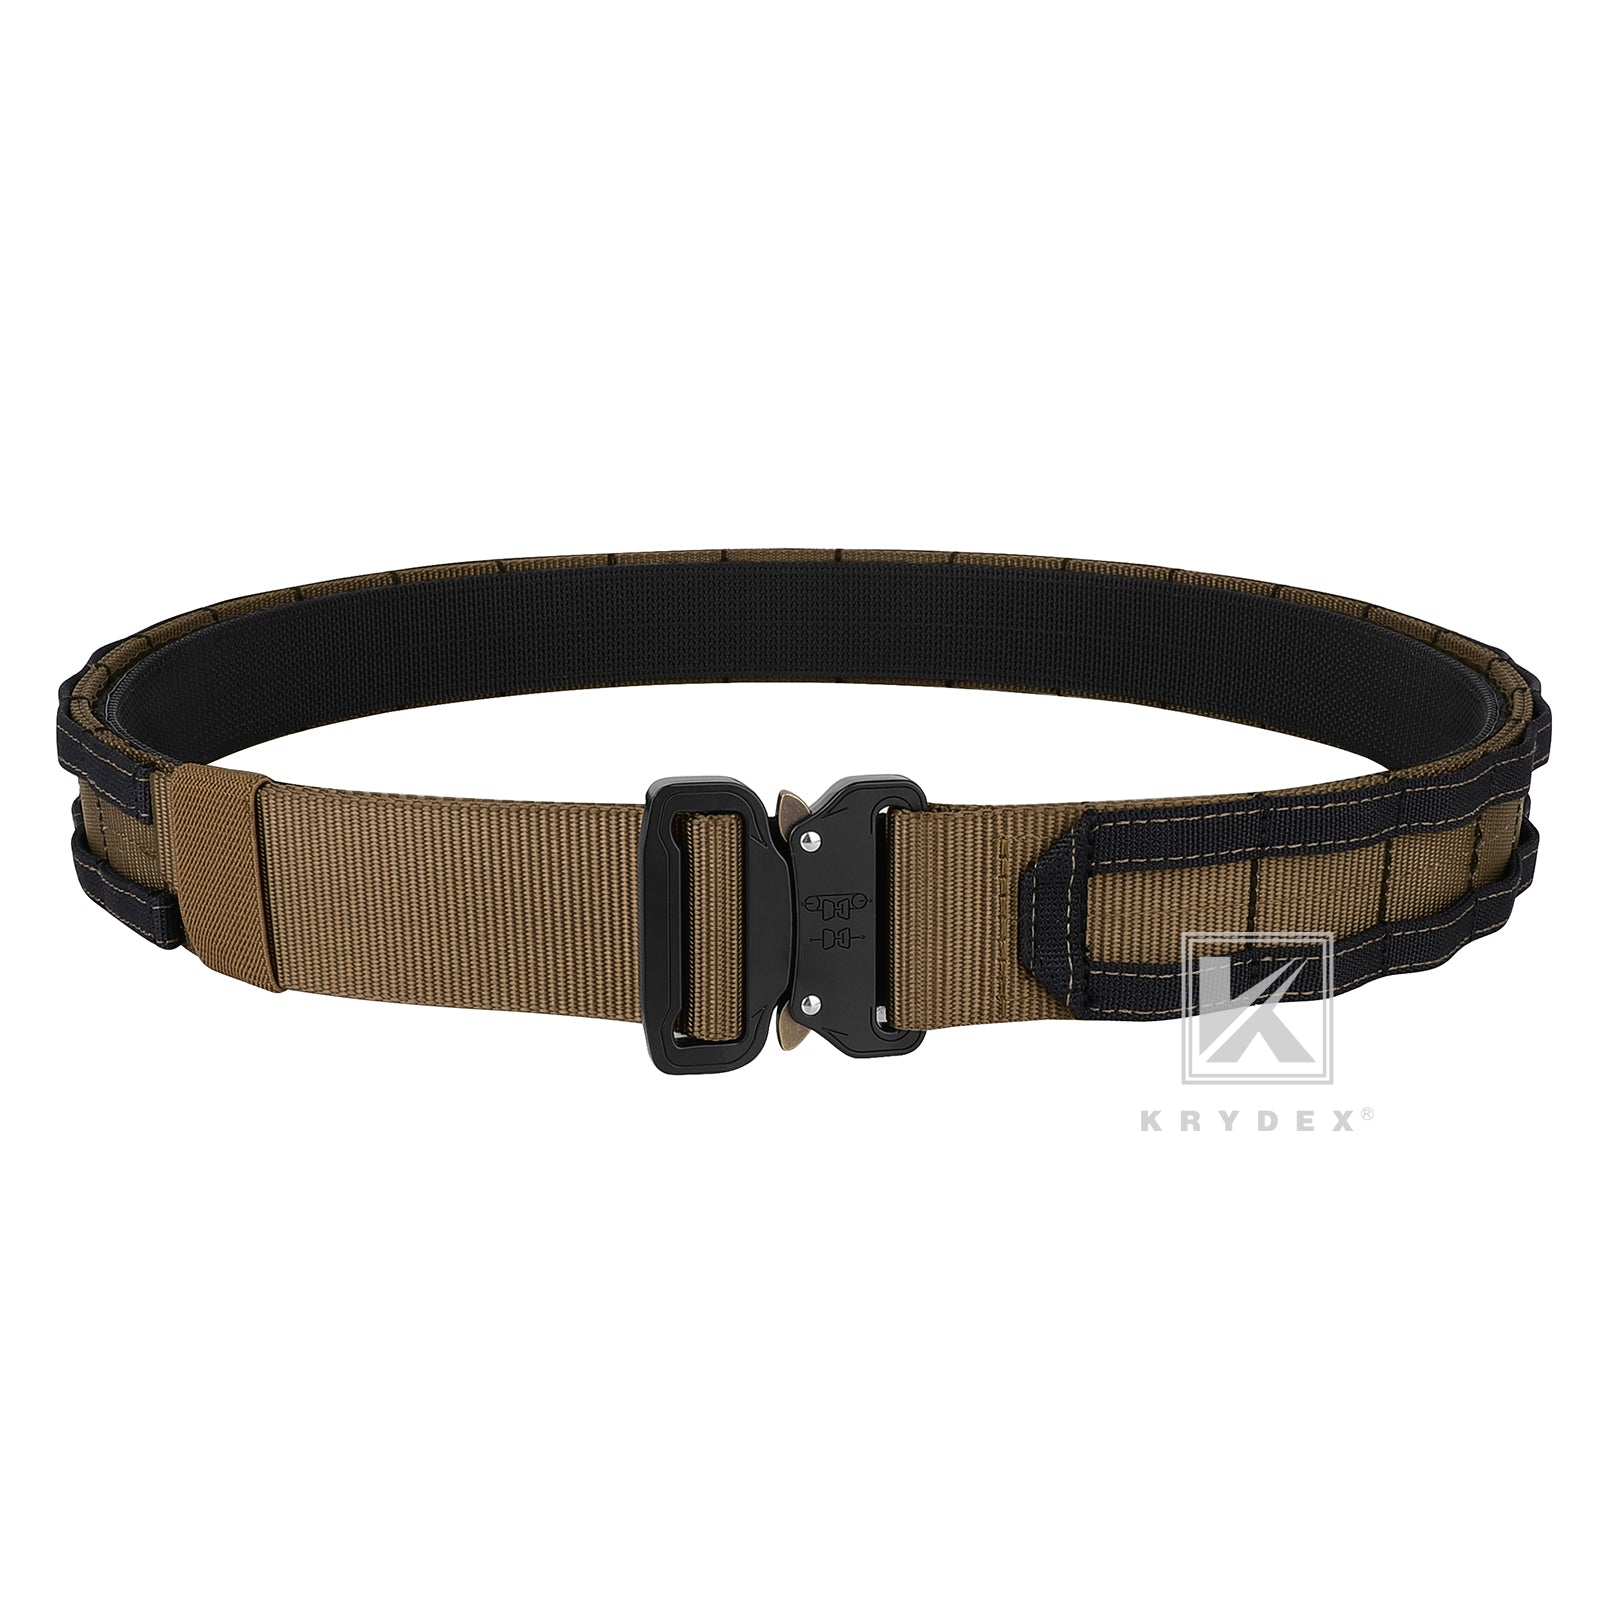 Emersongear Belt, Tactical Belt, Waist Strap